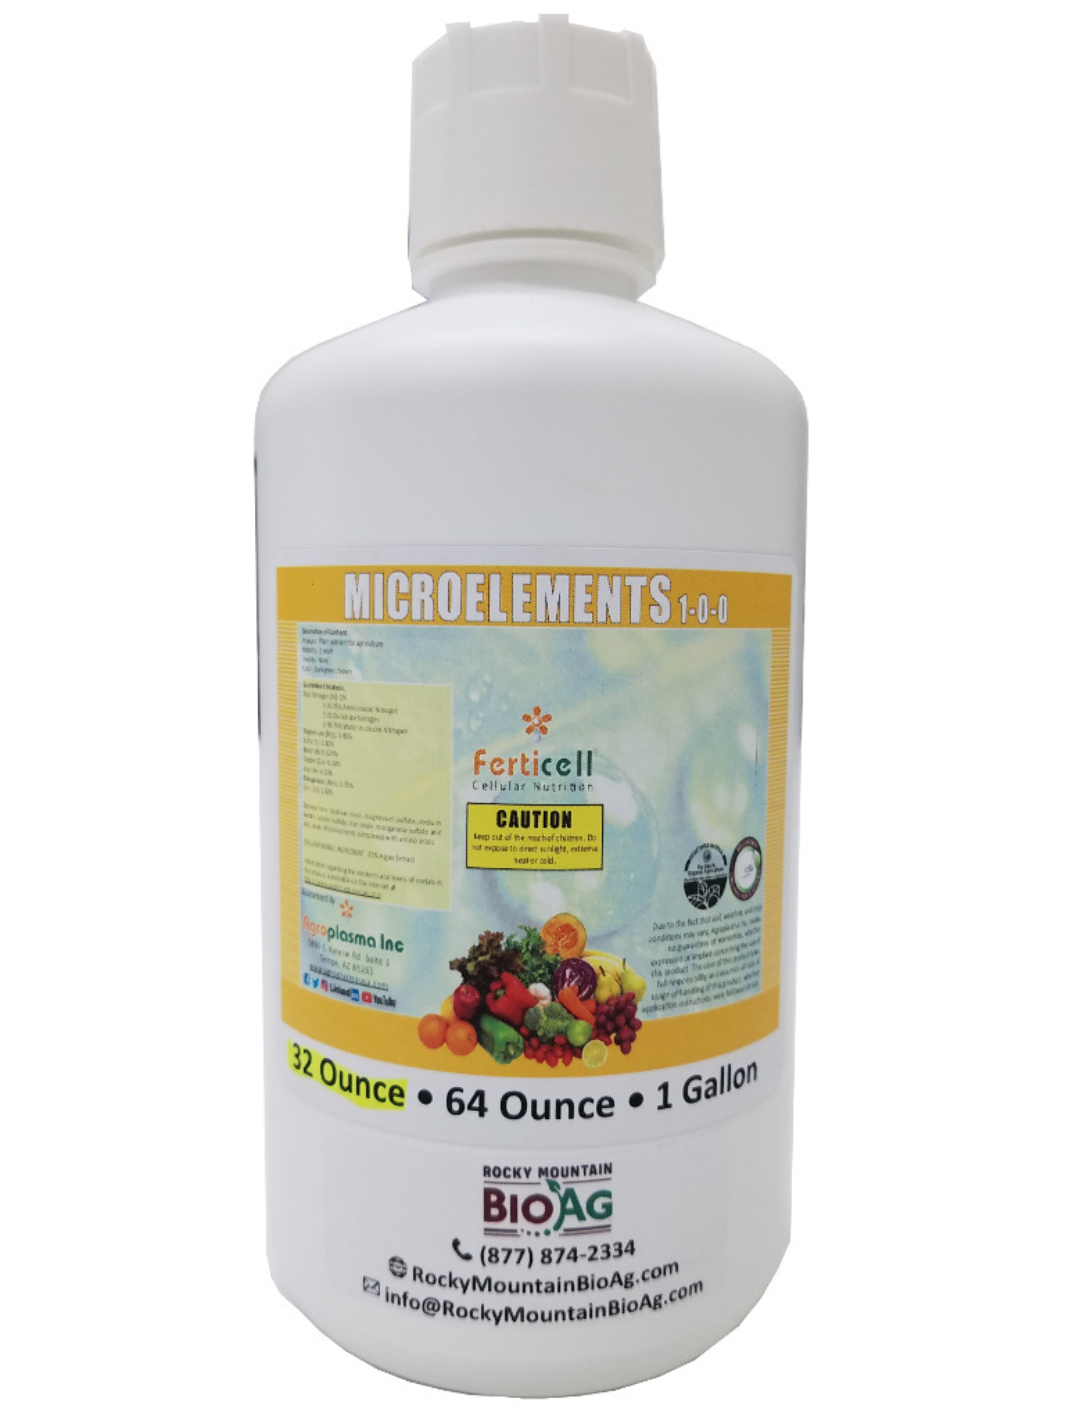 Ferticell Microelements 1-0-0 Organic Fertilizer in 32 Ounce Bottle